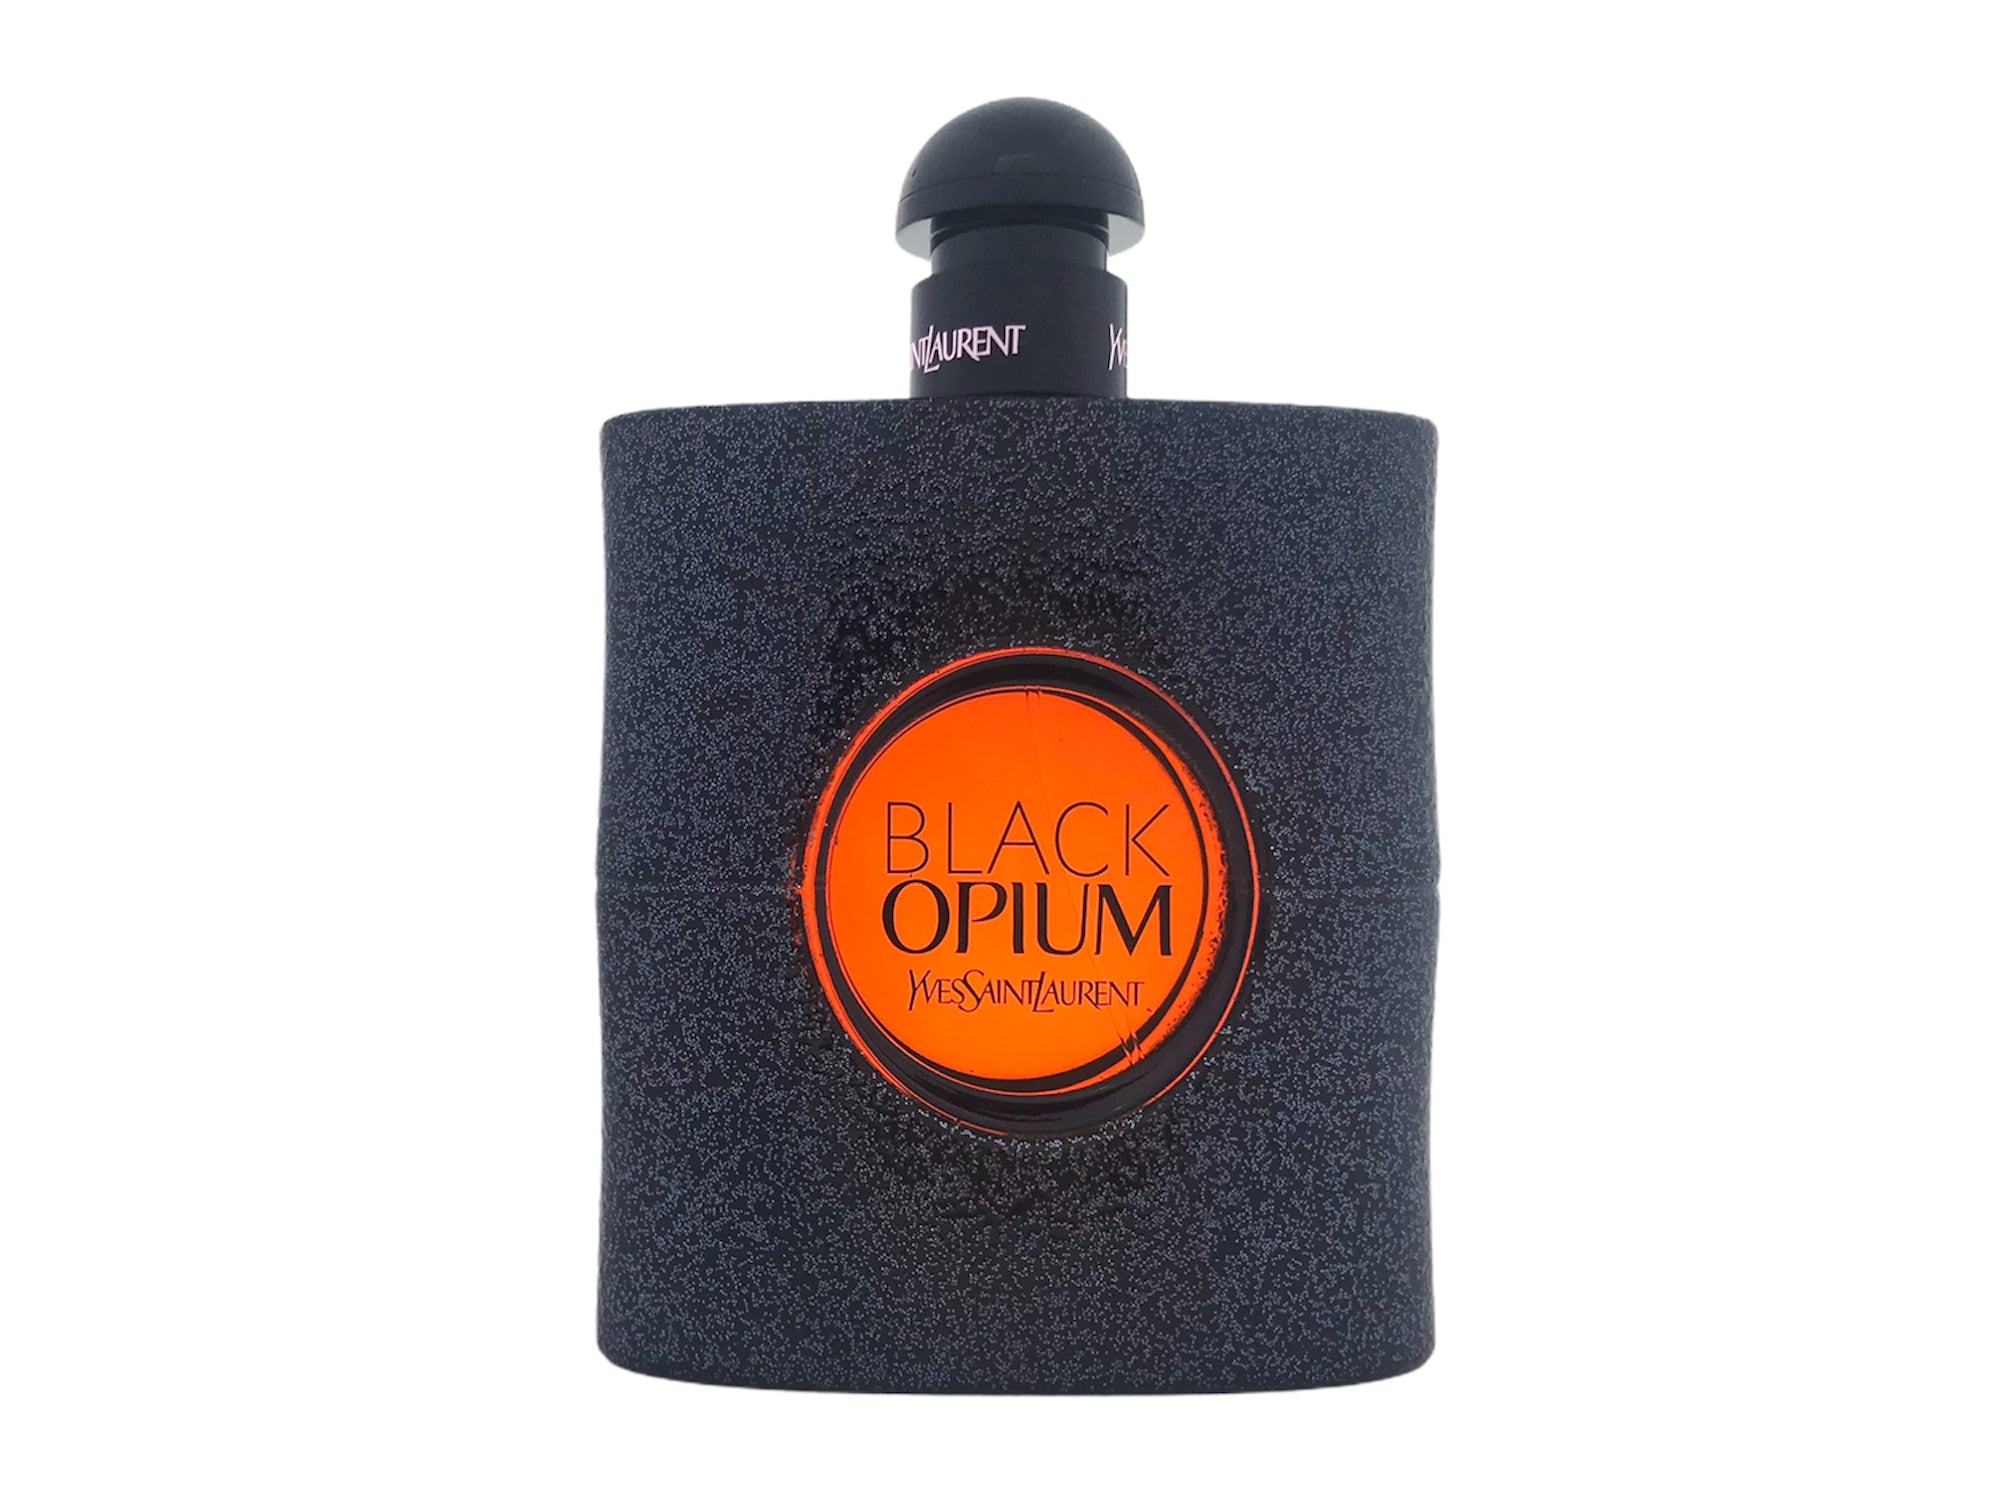  Yves Saint Laurent Black Opium Eau de Parfum 90ml